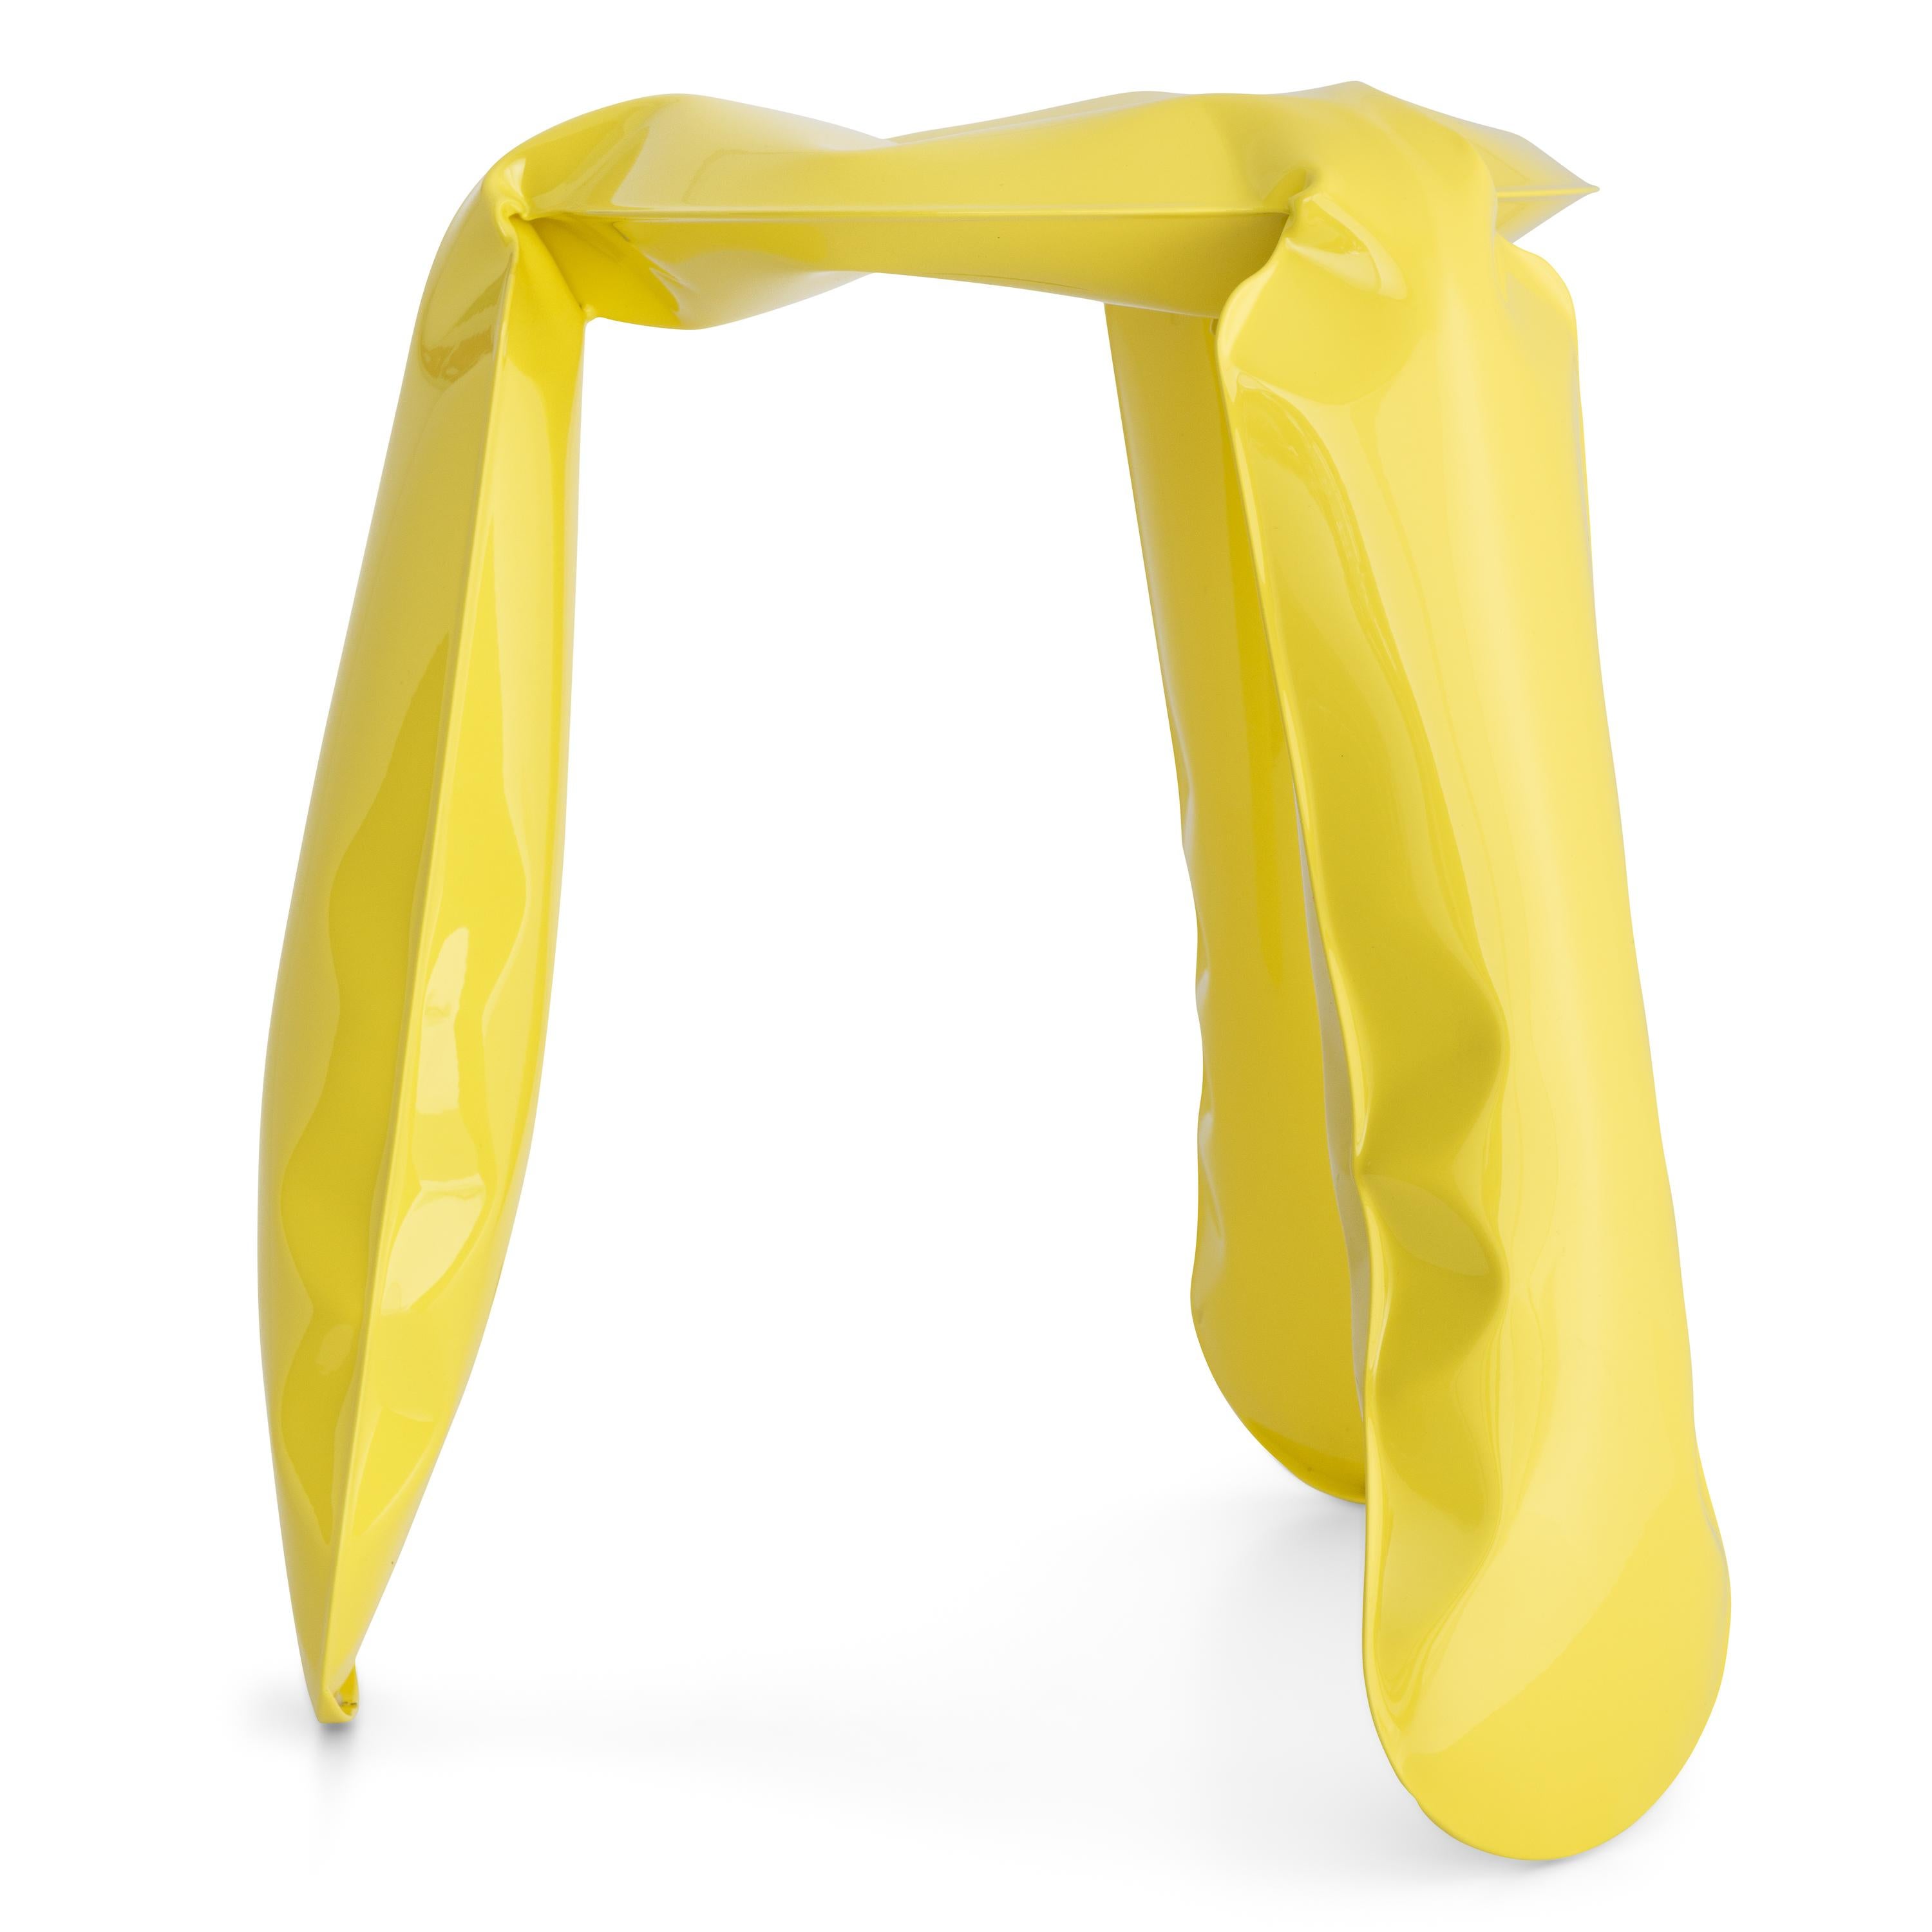 Organic Modern Yellow Steel Standard Plopp Stool by Zieta For Sale